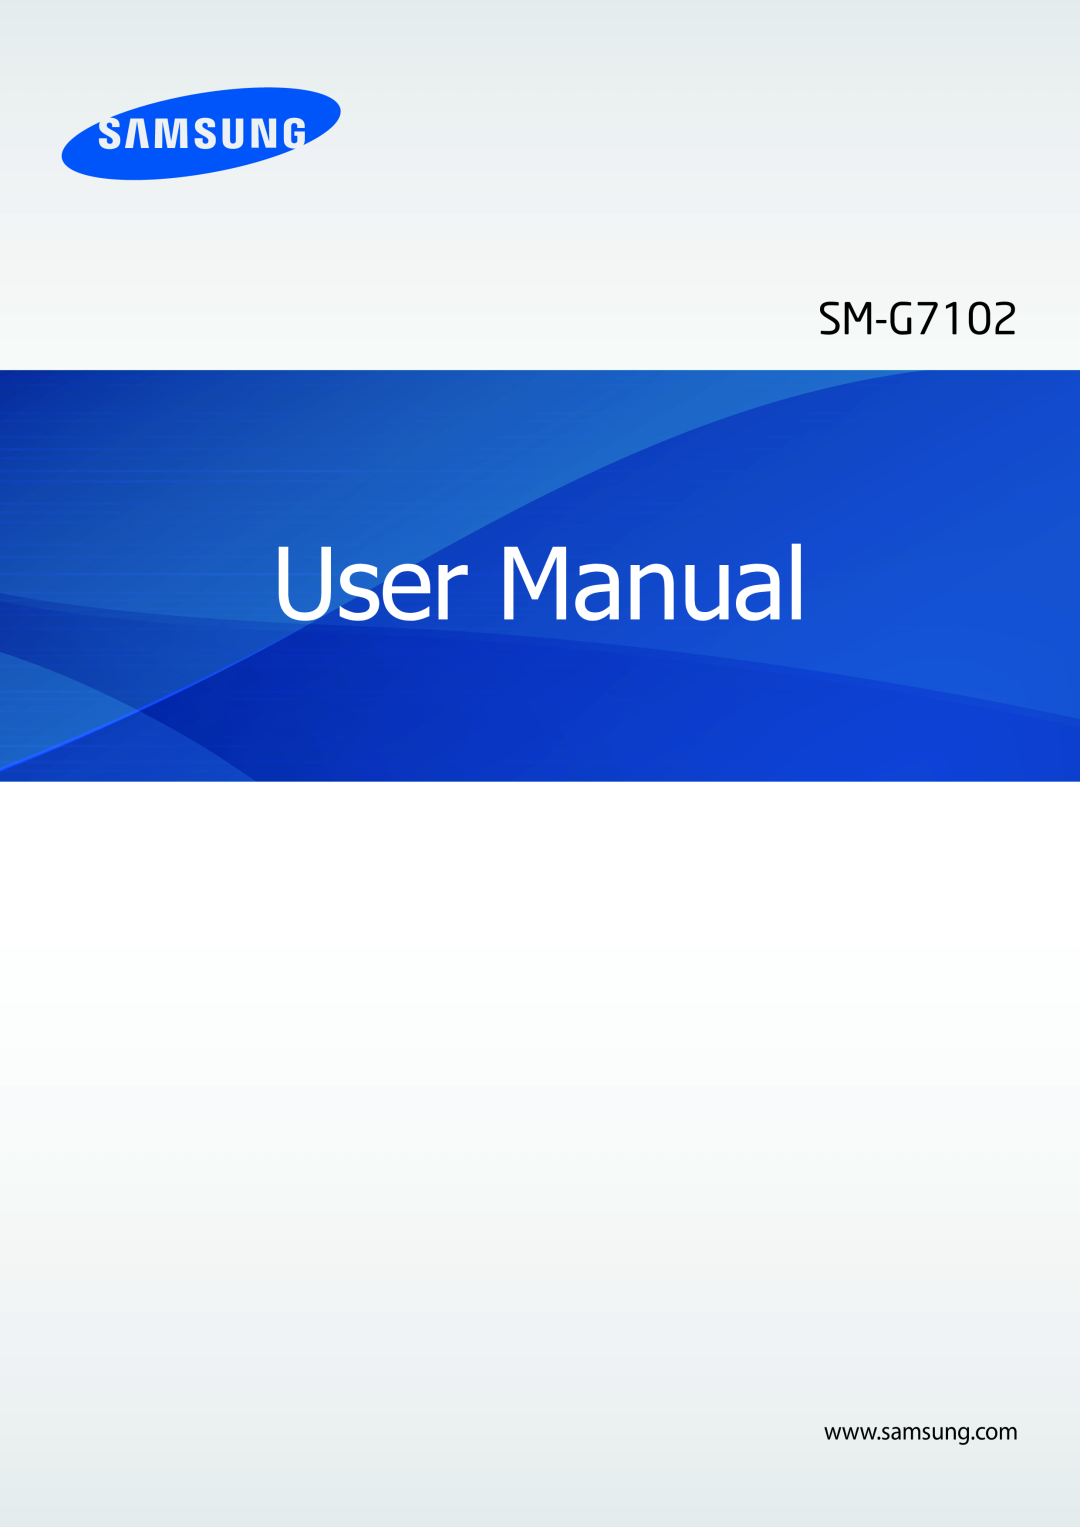 Samsung SM-G7102ZDAXSG, SM-G7102ZDAMID, SM-G7102ZKATMC, SM-G7102ZKAXFE, SM-G7102ZWAXFE, SM-G7102ZDALYS manual User Manual 